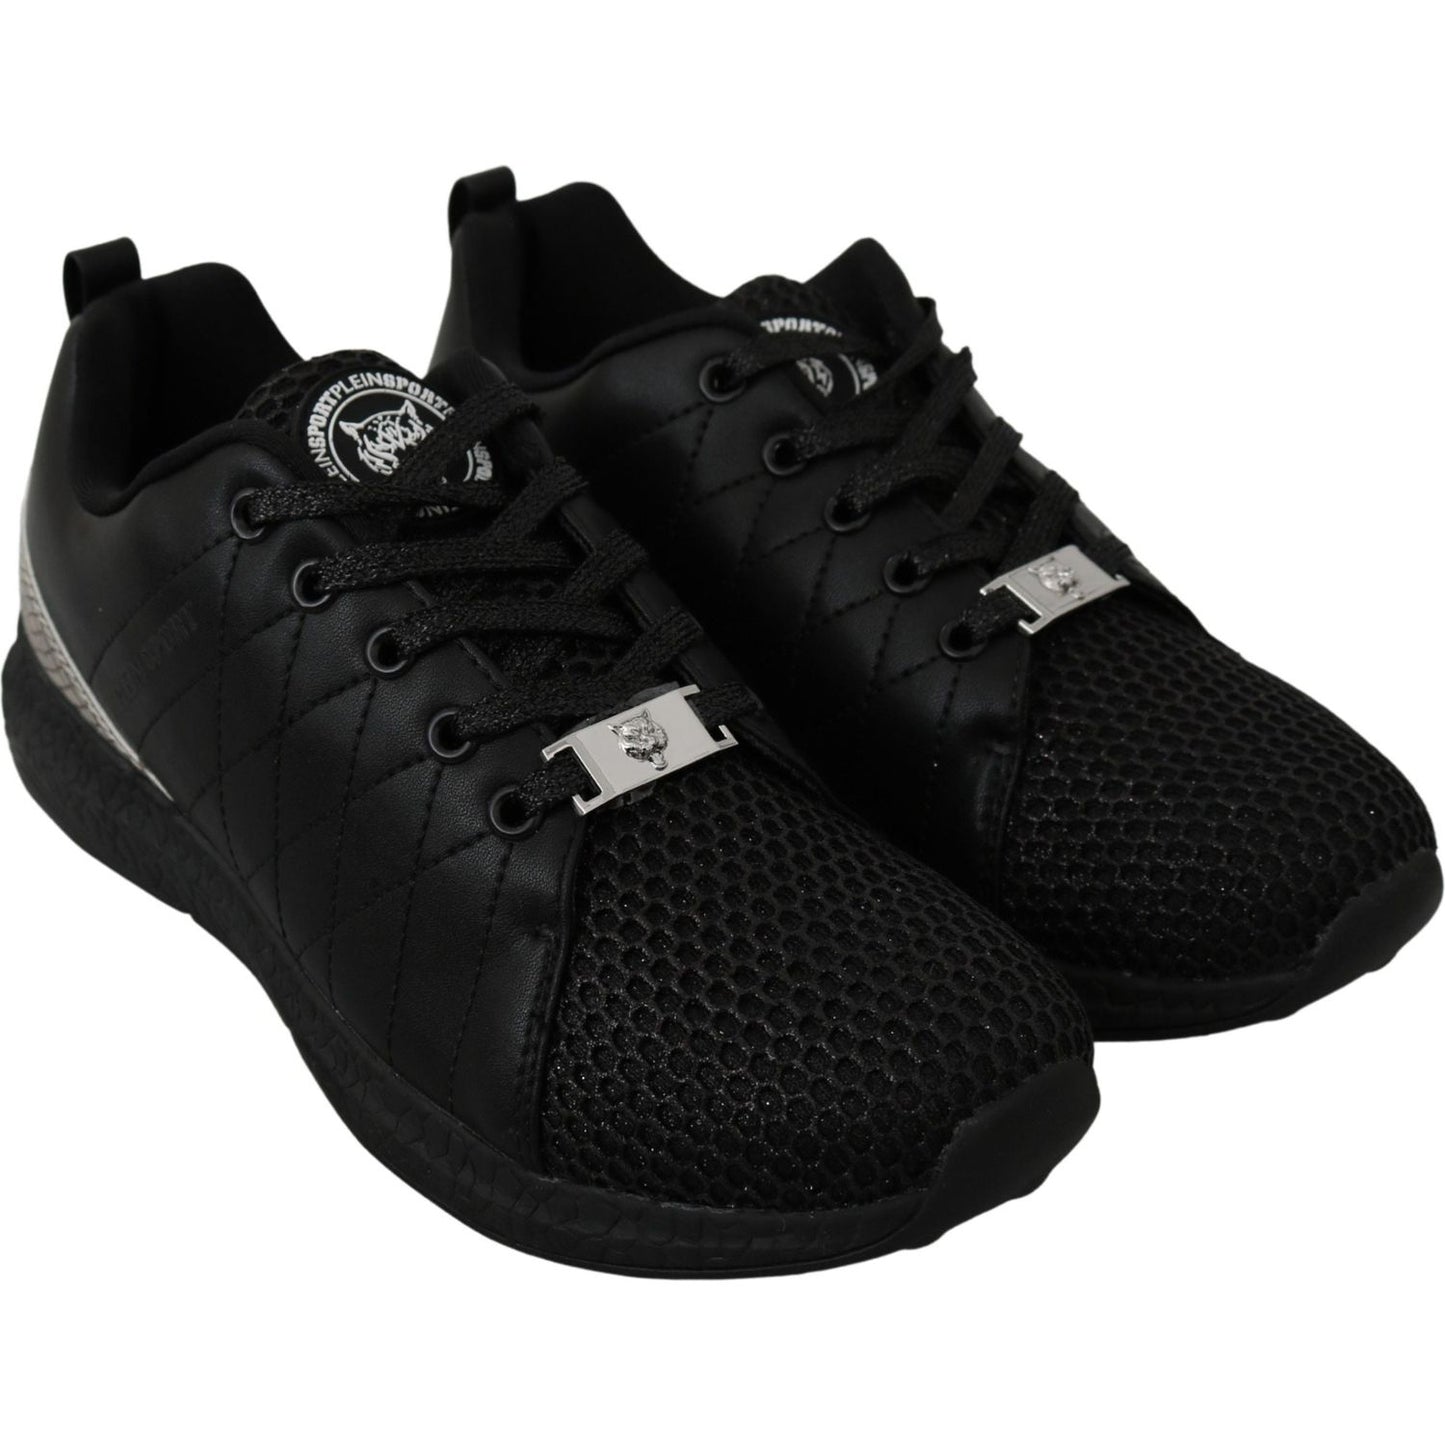 Philipp Plein Elegant Black Gisella Sneakers WOMAN SNEAKERS black-casual-running-sneakers-shoes